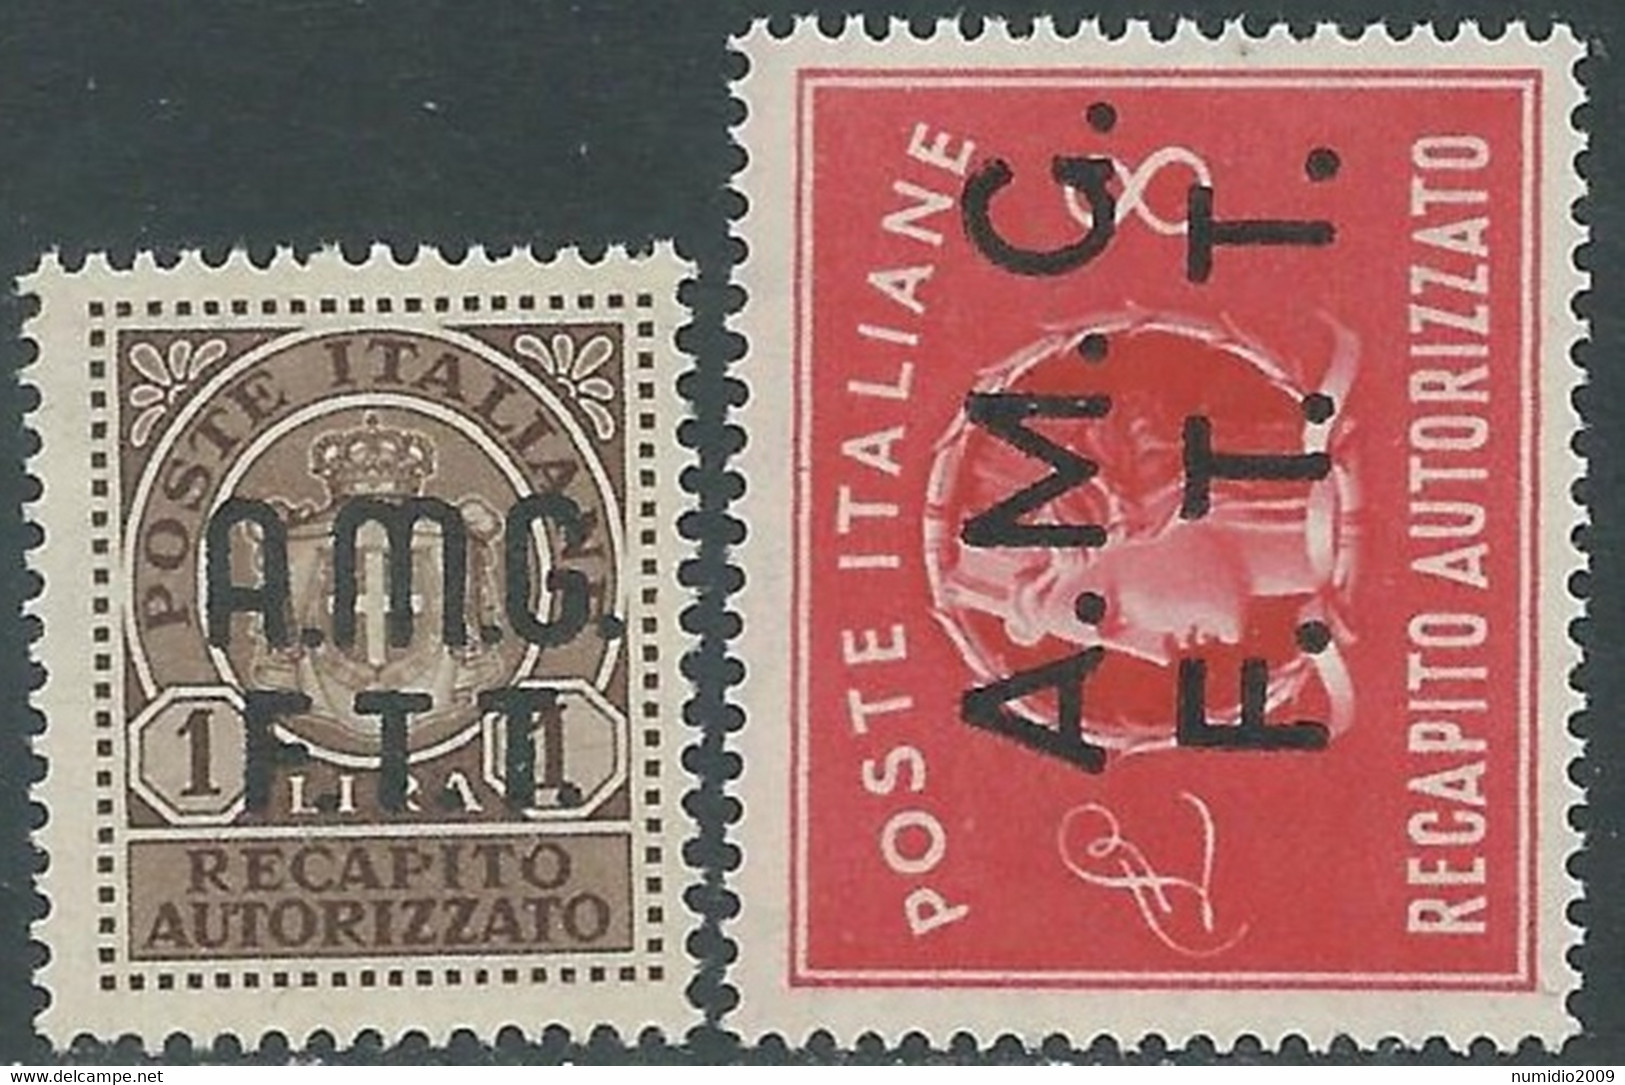 1947 TRIESTE A RECAPITO AUTORIZZATO 2 VALORI MNH ** - RE9-5 - Express Mail